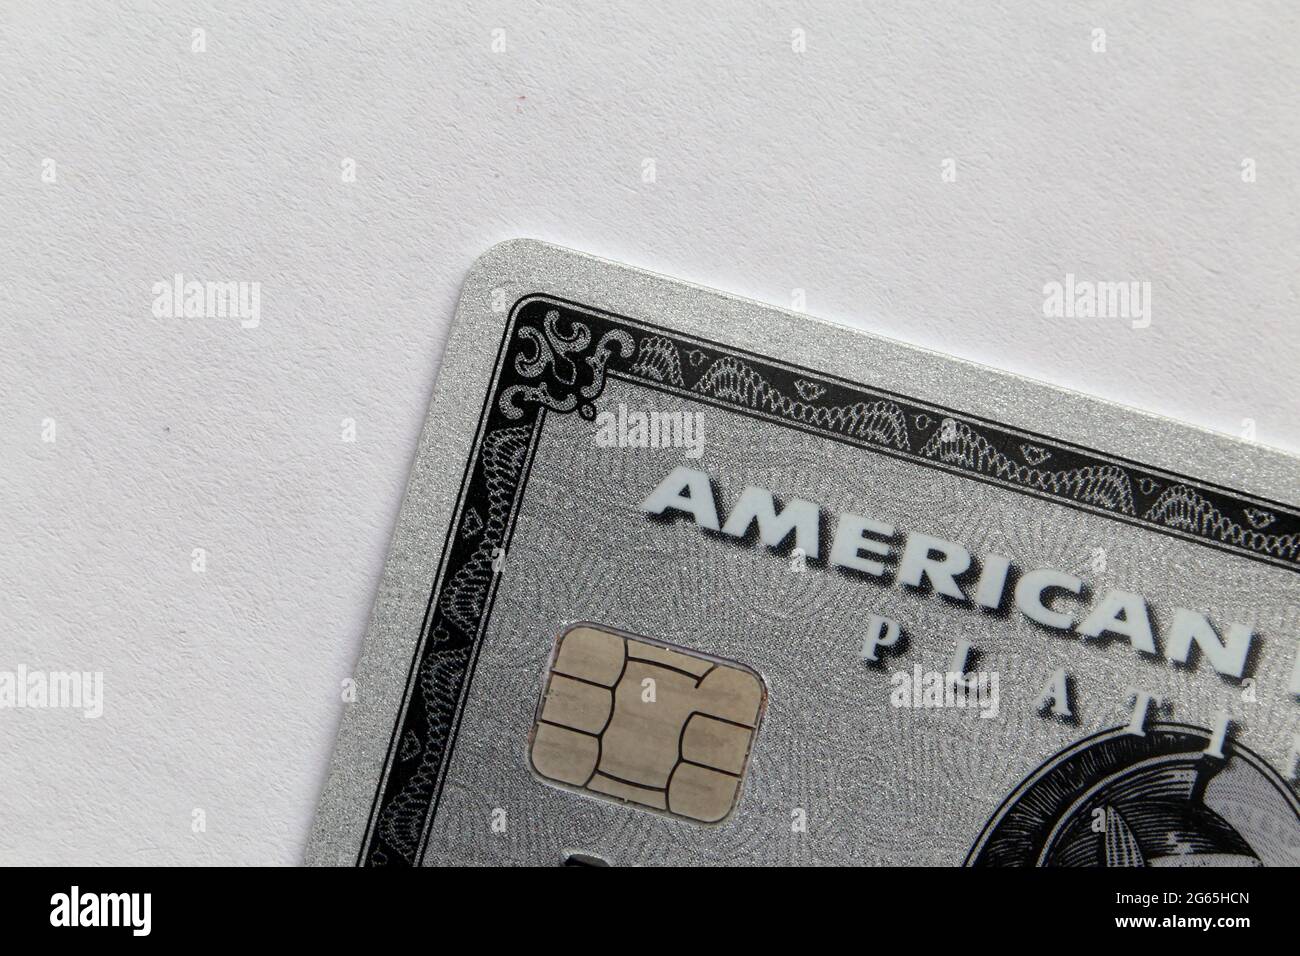 American Express Platinum (Amex Platinum) Karte in einer Nahaufnahme - dies ist die alte Amex Platinum Karte aus Kunststoff. April 2020, Espoo, Finnland. Stockfoto